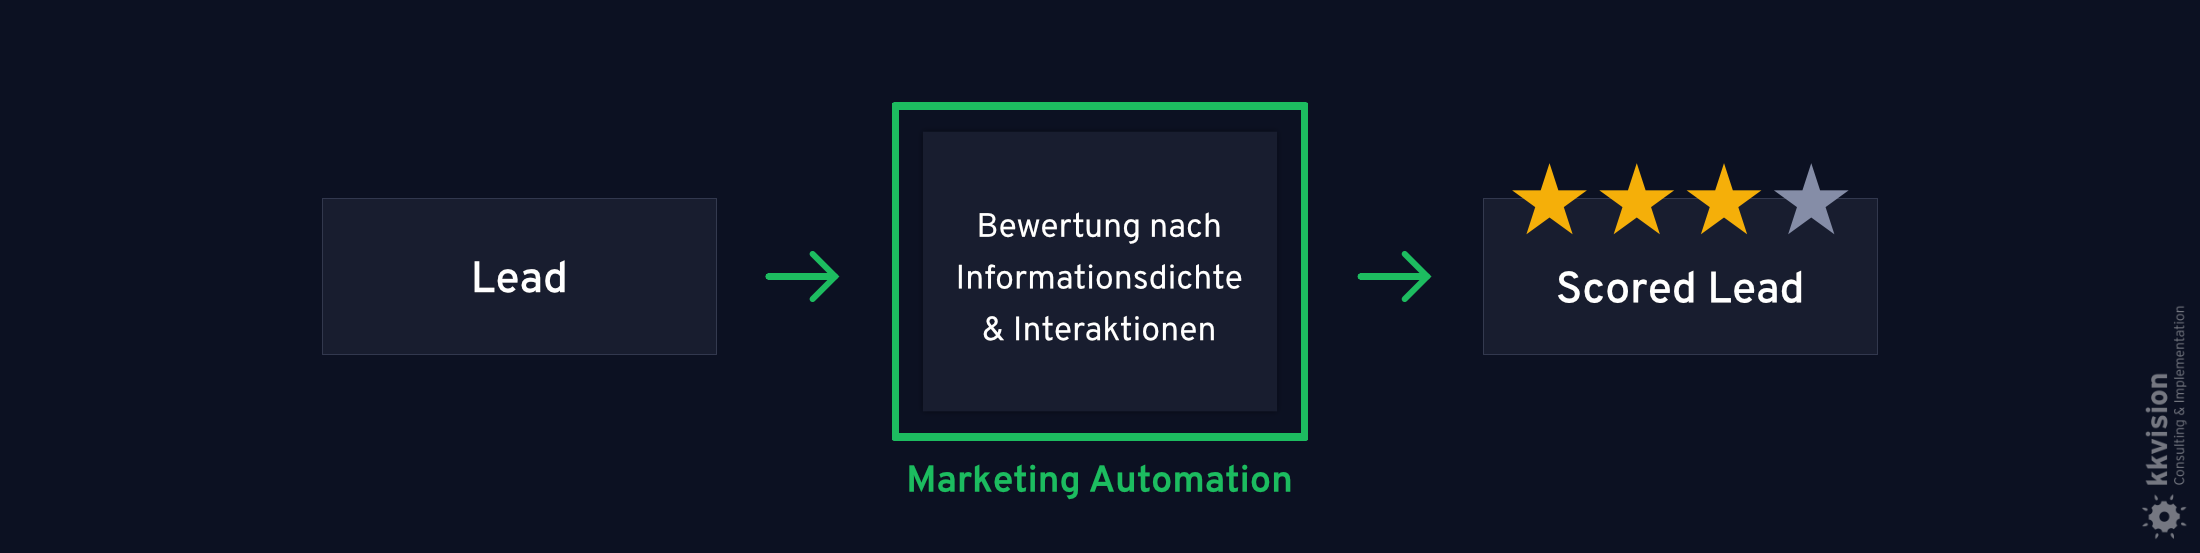 B2B Marketing Automation_18